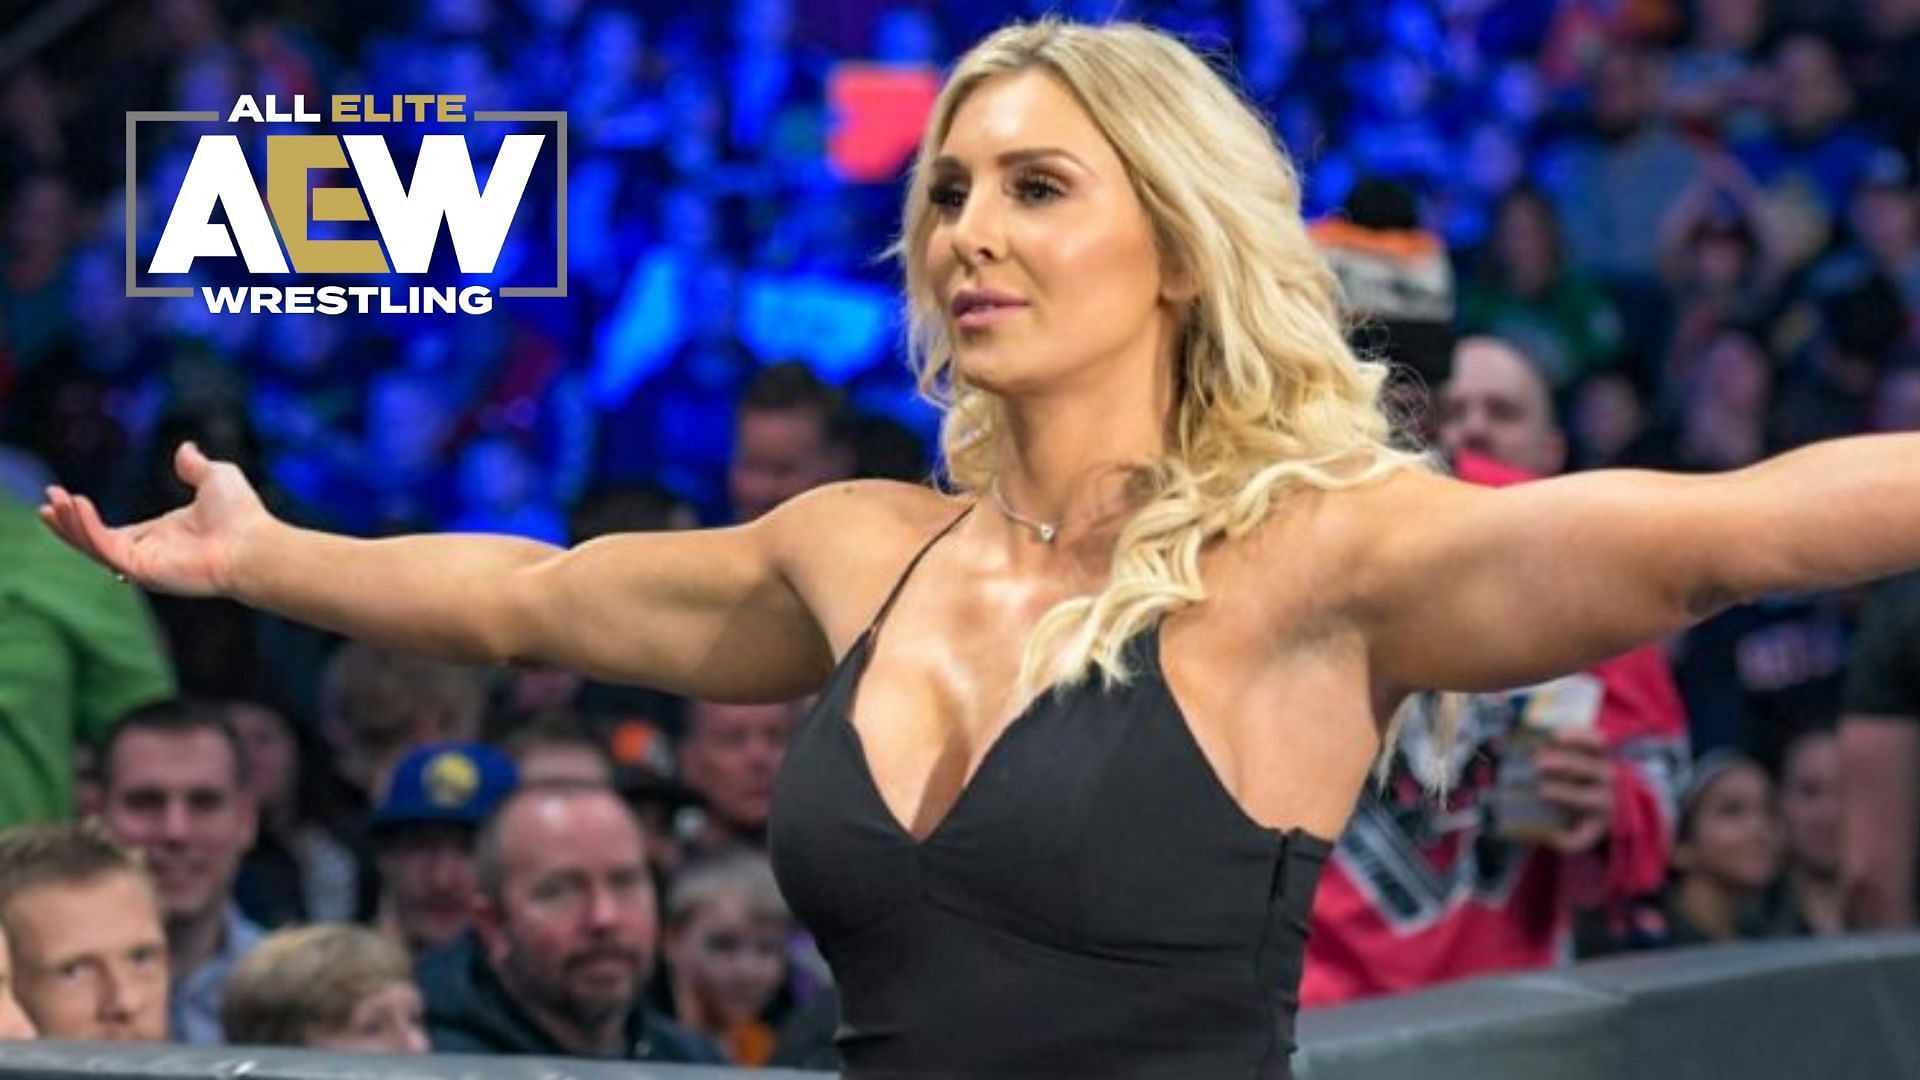 Charlotte is former WWE Smackdown Women